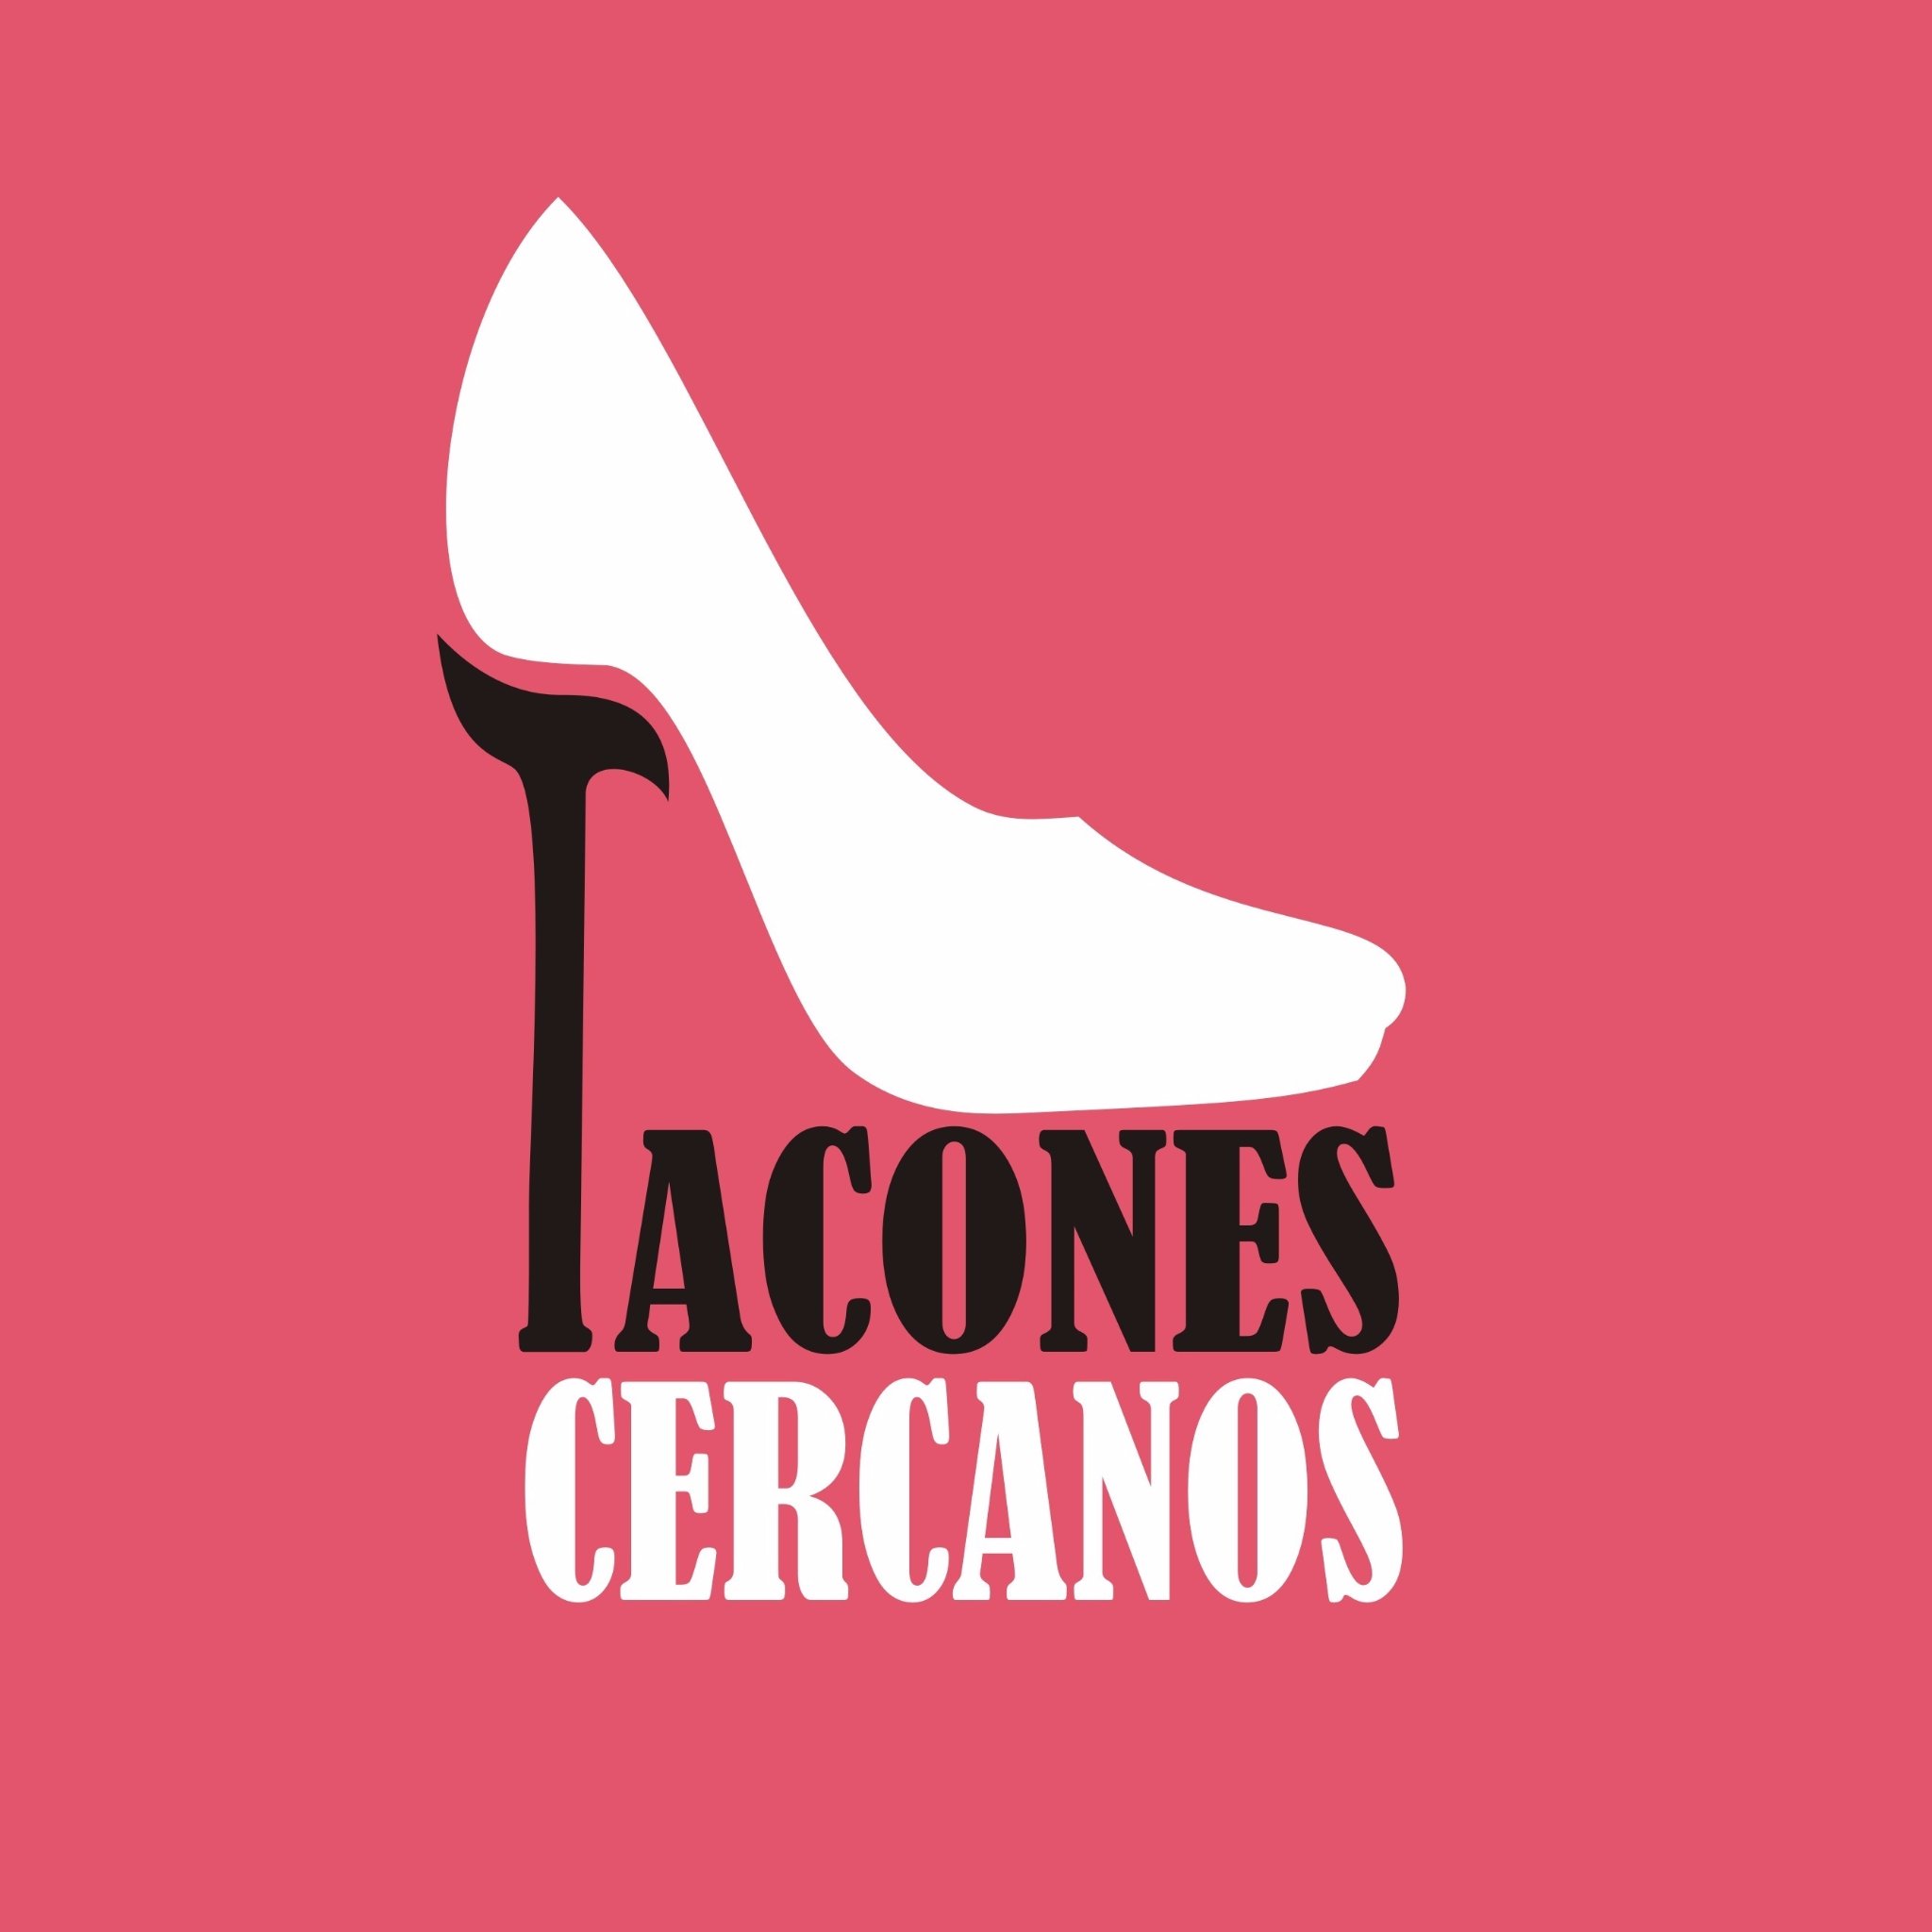 Revista Tacones Cercanos-
Historias de trabajadoras sexuales del barrio de Constitución-Buenos Aires-Argentina